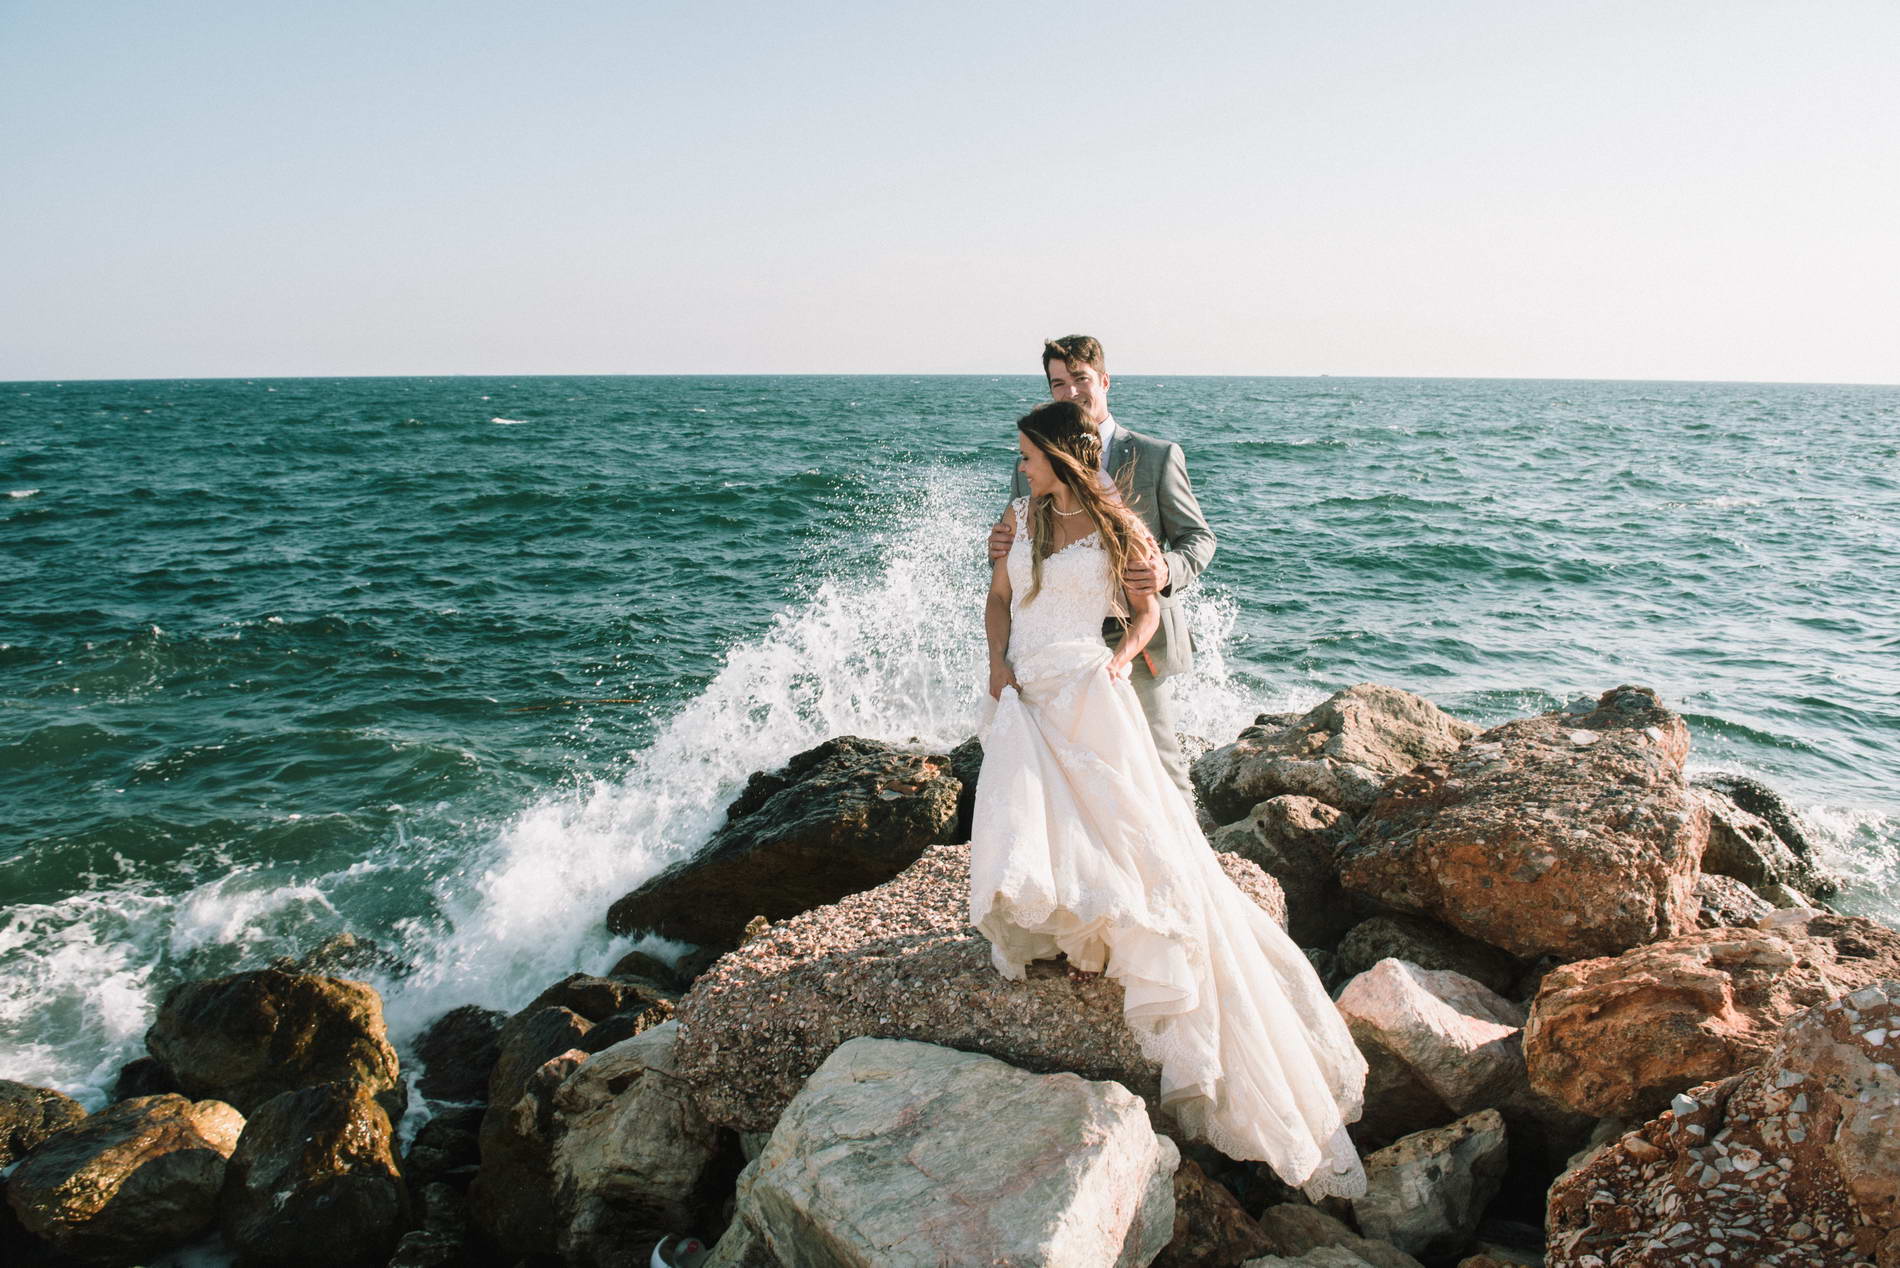 Next day φωτογράφηση γάμου στην θάλασσα